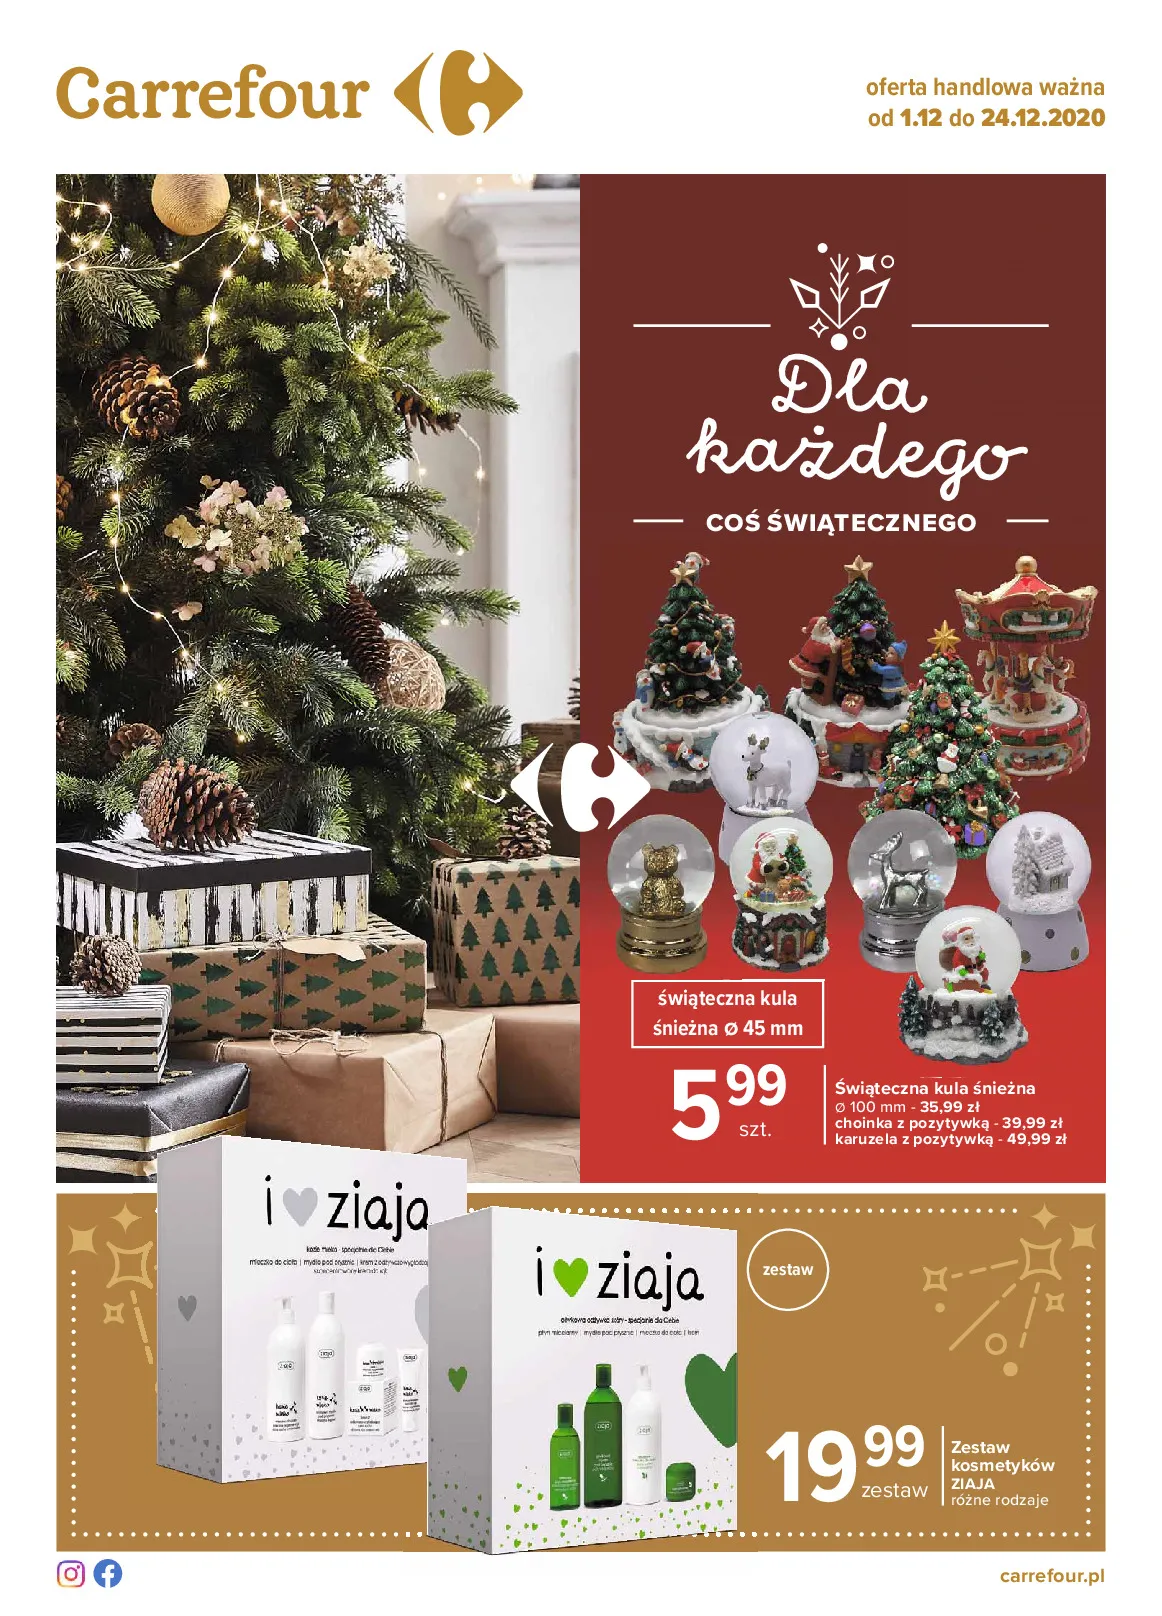 Gazetka promocyjna Carrefour - Dla każdego coś świątecznego - ważna 01.12 do 24.12.2020 - strona 1